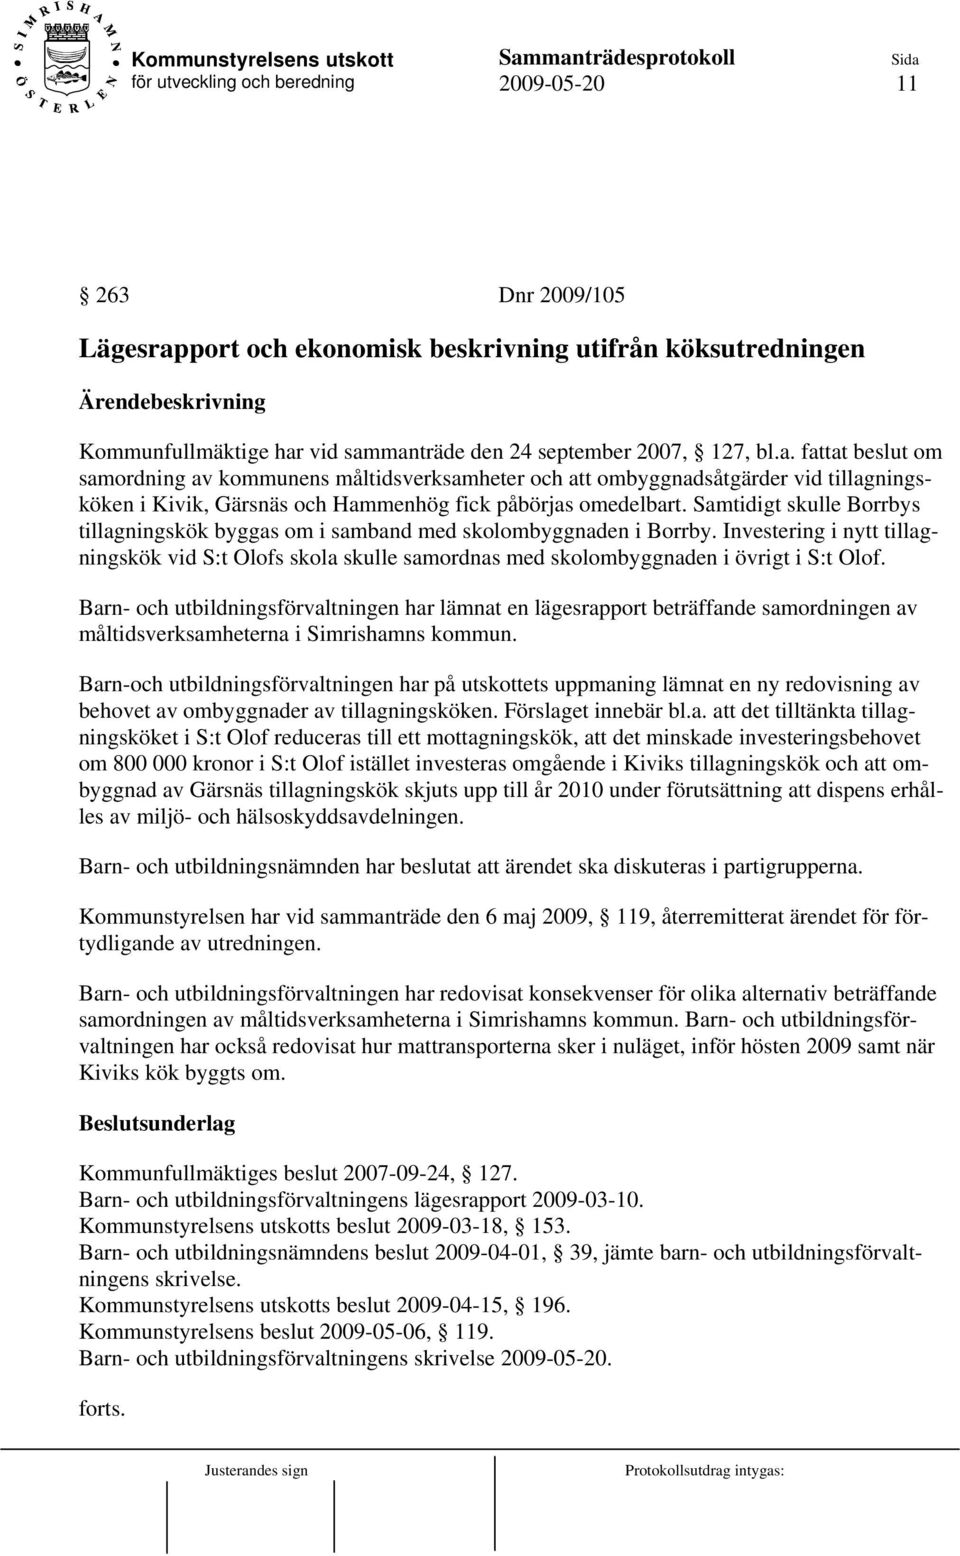 vid sammanträde den 24 september 2007, 127, bl.a. fattat beslut om samordning av kommunens måltidsverksamheter och att ombyggnadsåtgärder vid tillagningsköken i Kivik, Gärsnäs och Hammenhög fick påbörjas omedelbart.